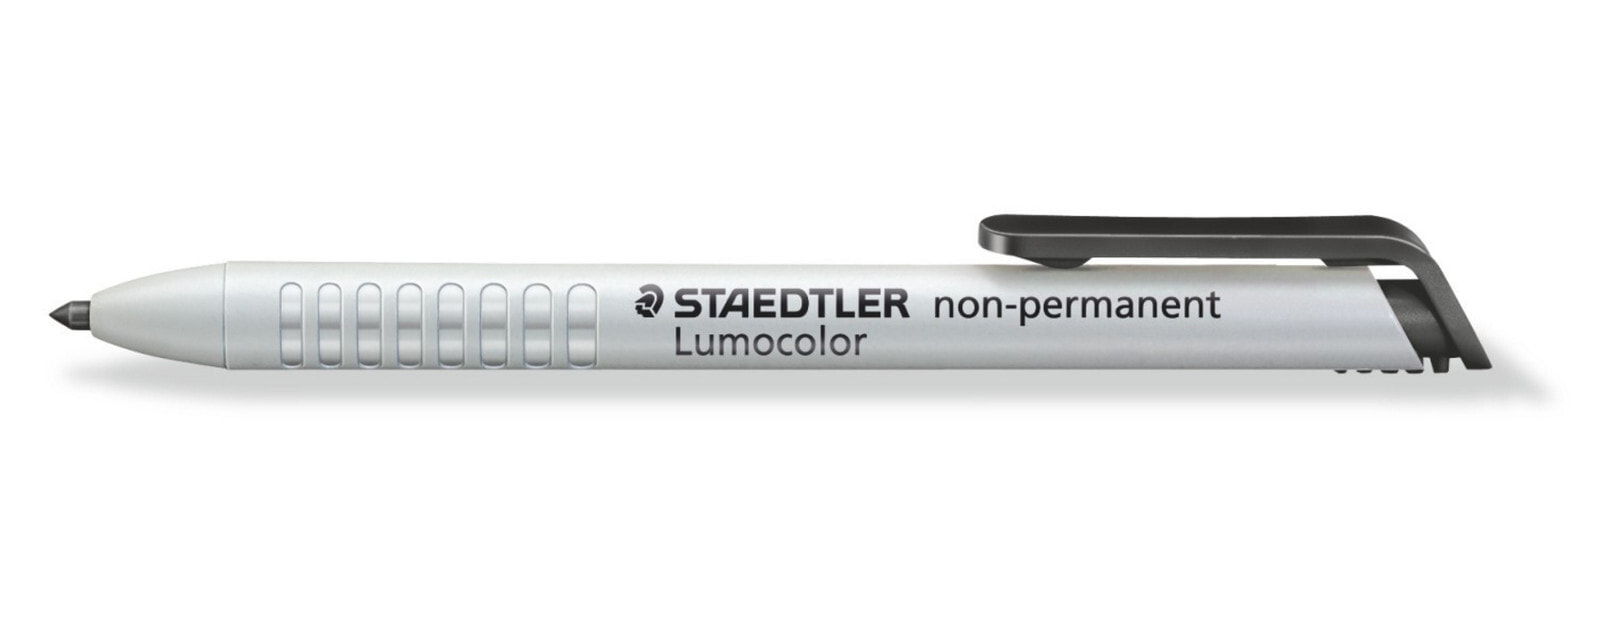 Staedtler Lumocolor 768 перманентная маркер Черный Пулевидный наконечник 1 шт 768N-9